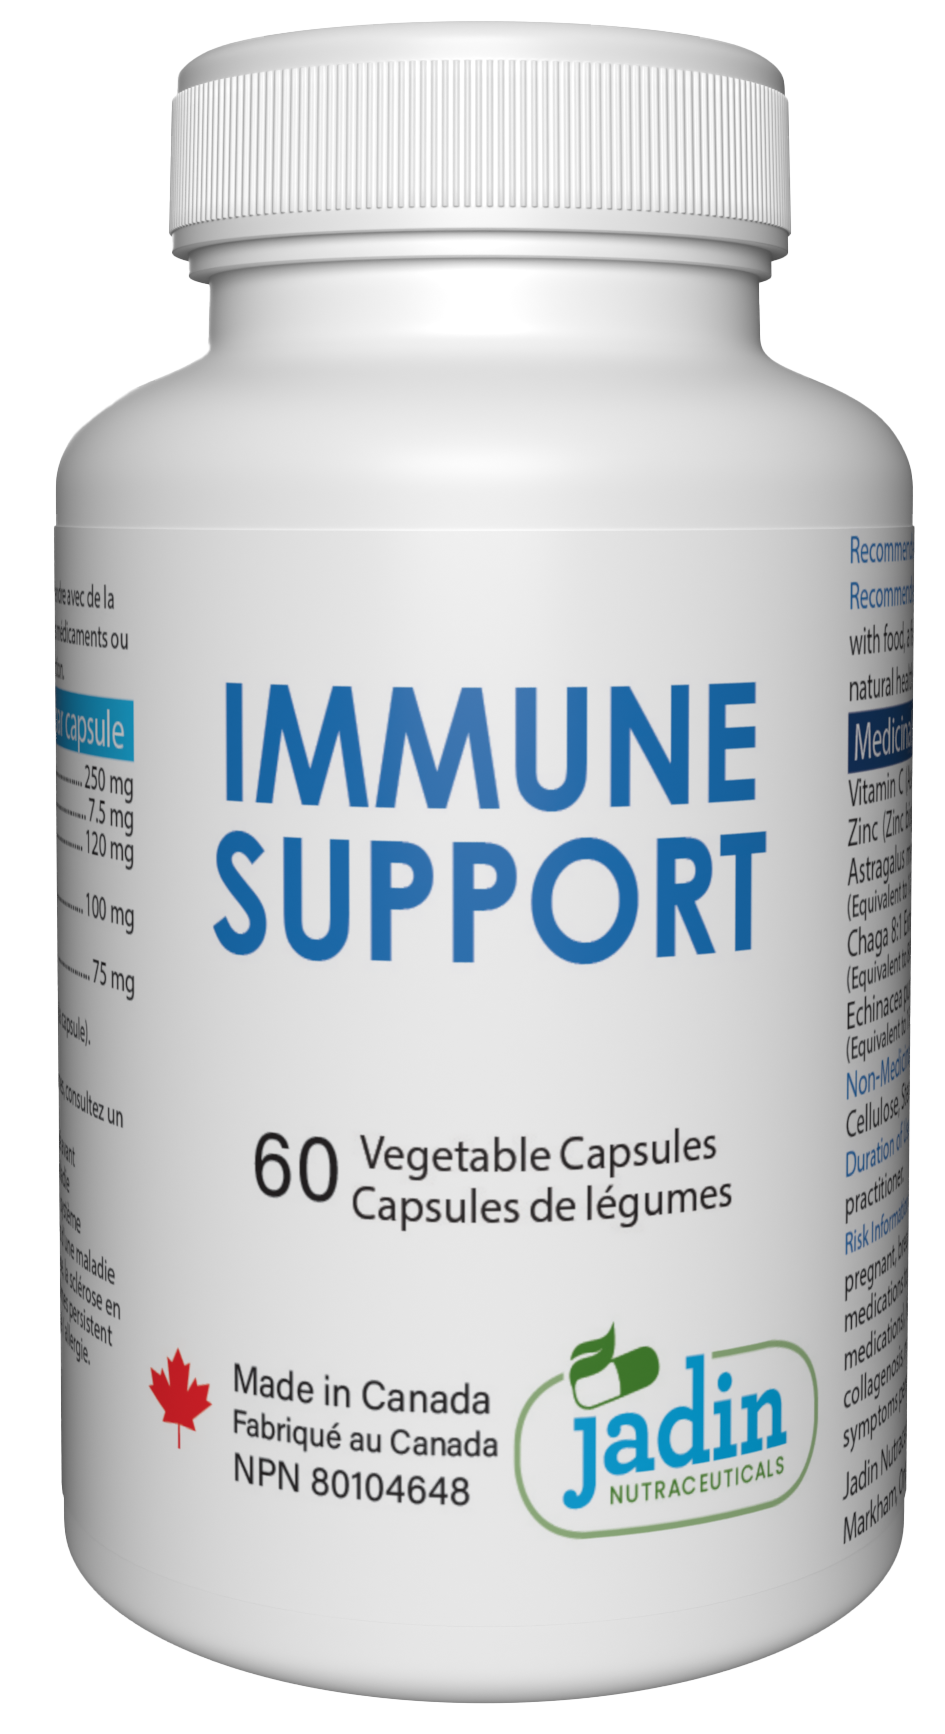 IMMUNE SUPPORT – 5 in 1 Premium Supplement – Vitamin C, Zinc, Chaga Mushroom, Astragalus & Echinacea – 60 Vegetable Capsules